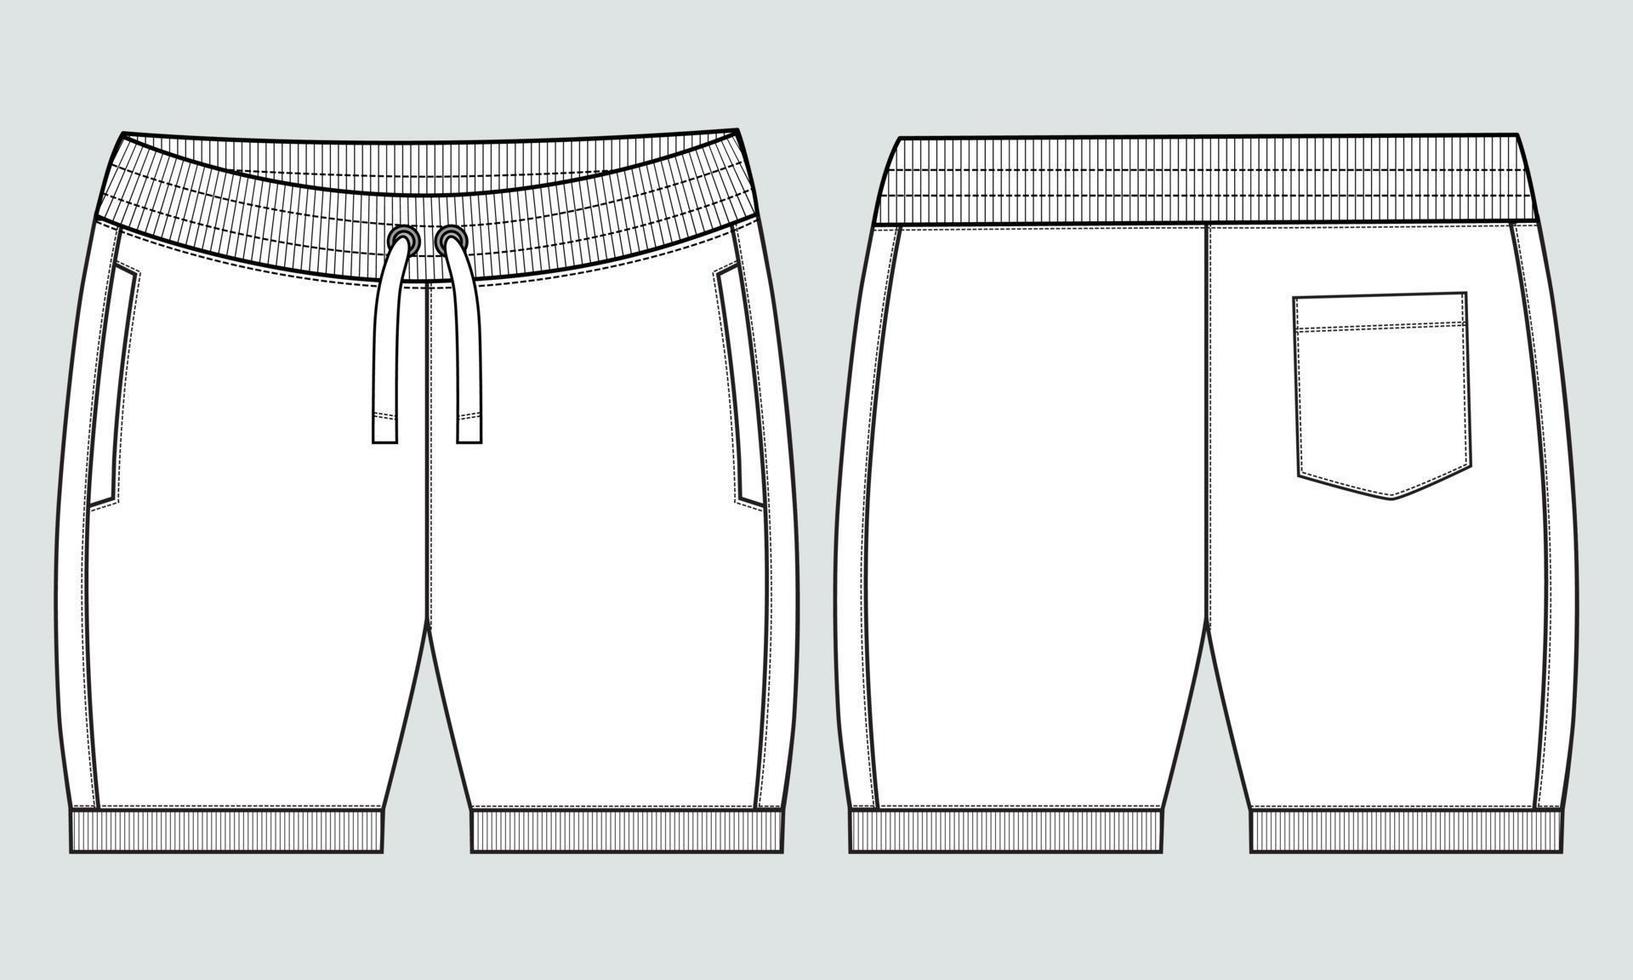 svettas jersey shorts flämta vektor mode platt skiss mall.